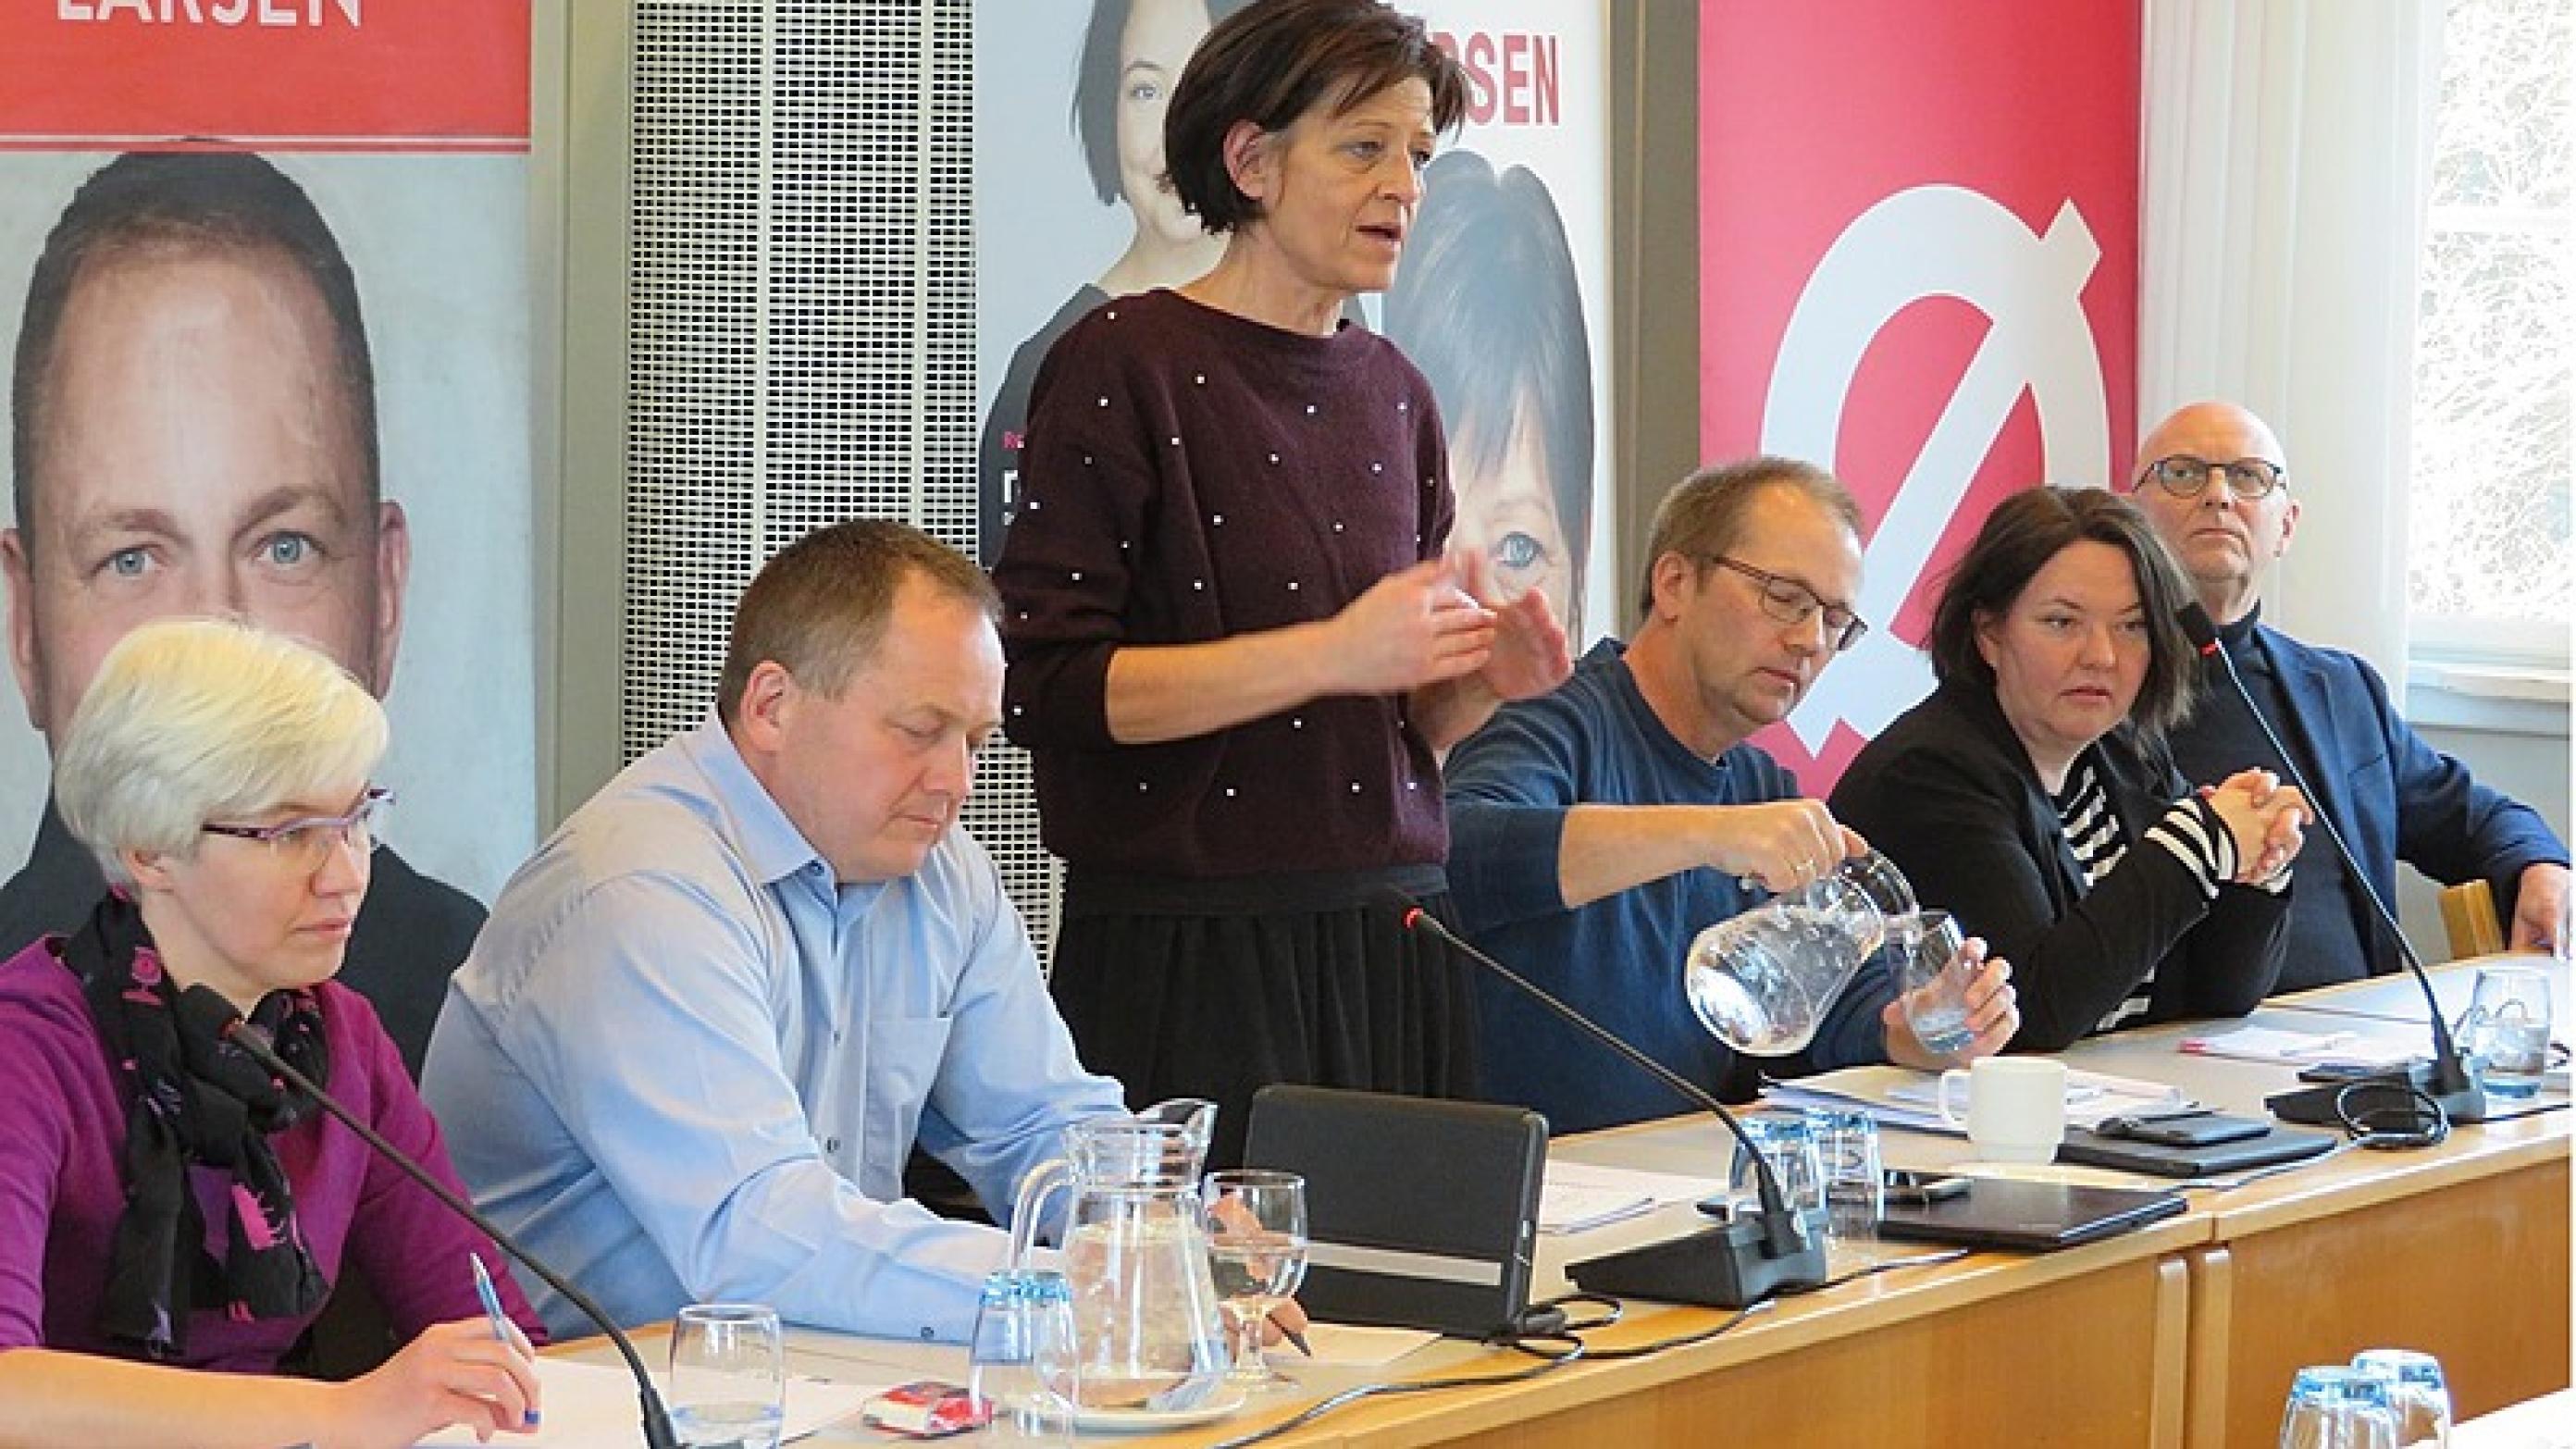 Sundhedspolitikere fra de ni partier i Folketinget svarede på spørgsmål fra salen. Foto: Vibeke Holm Andersen